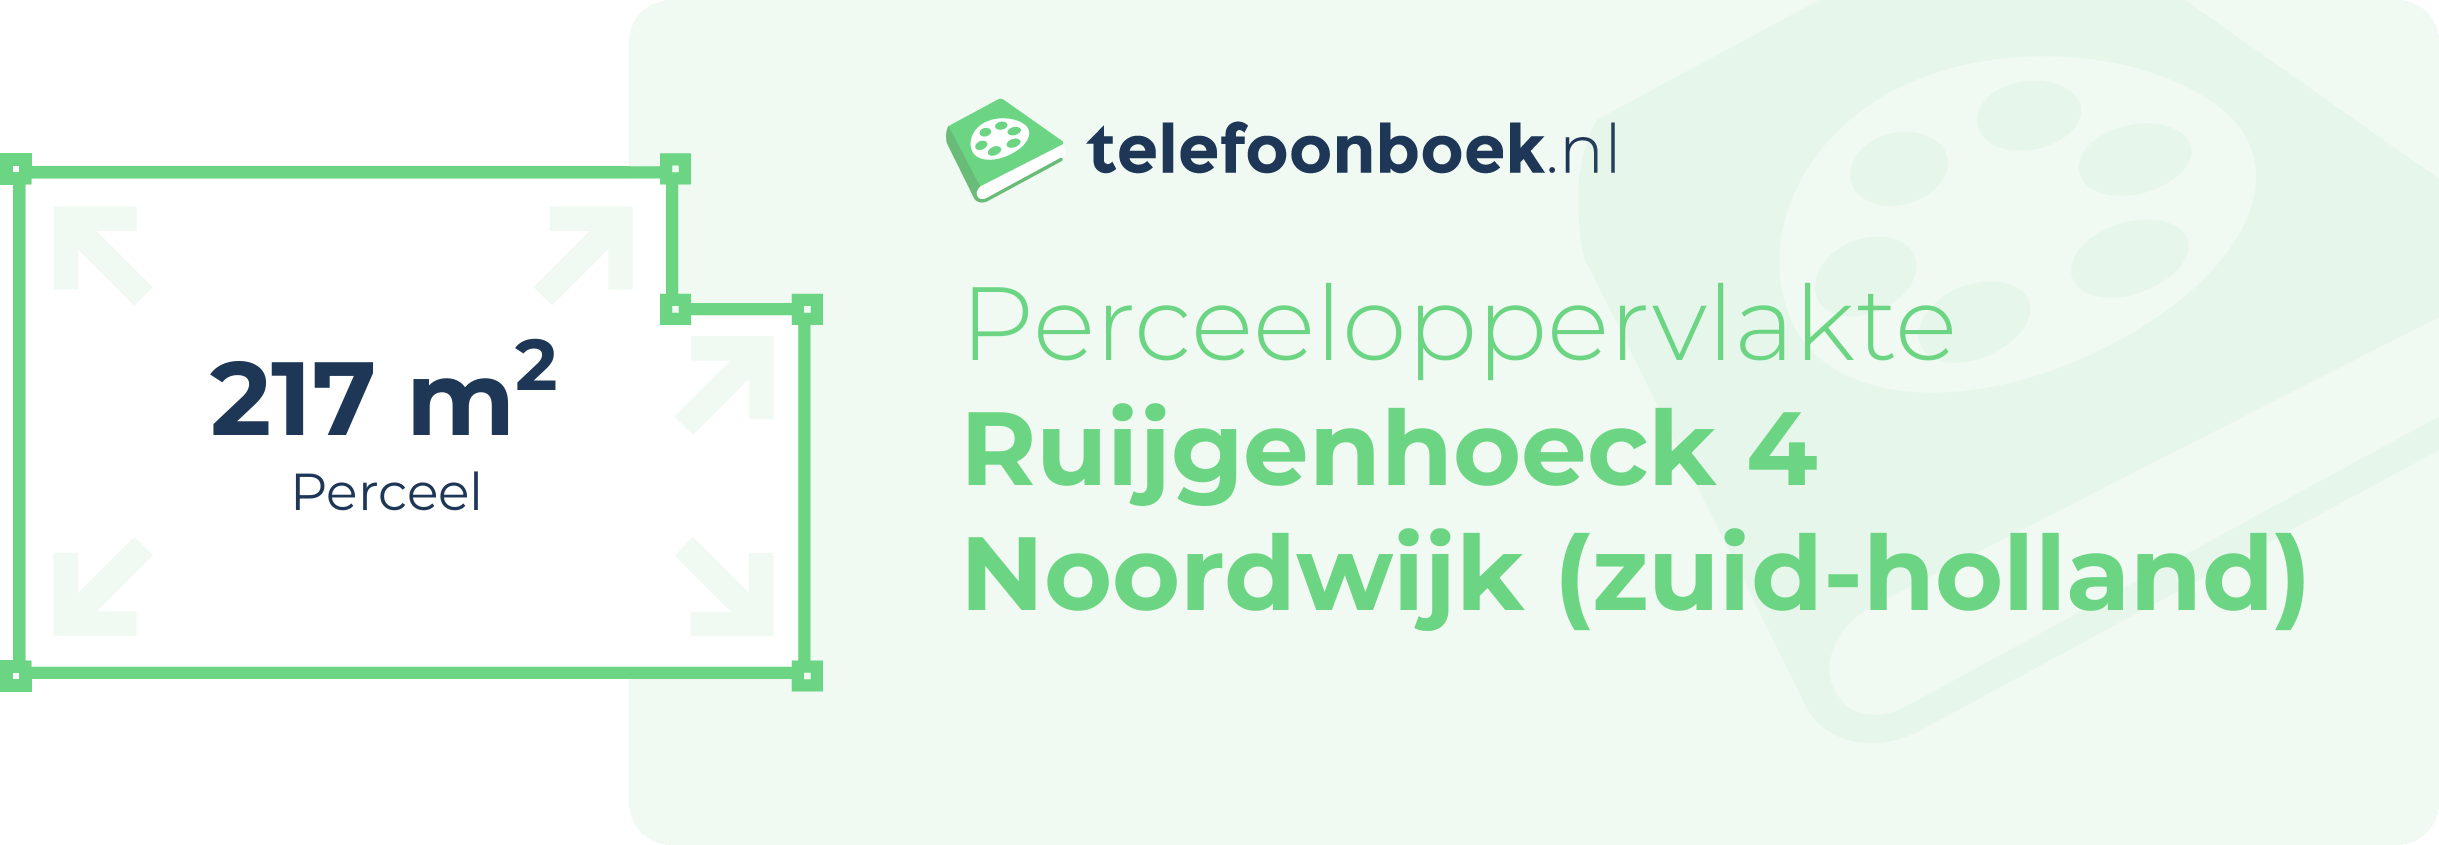 Perceeloppervlakte Ruijgenhoeck 4 Noordwijk (Zuid-Holland)